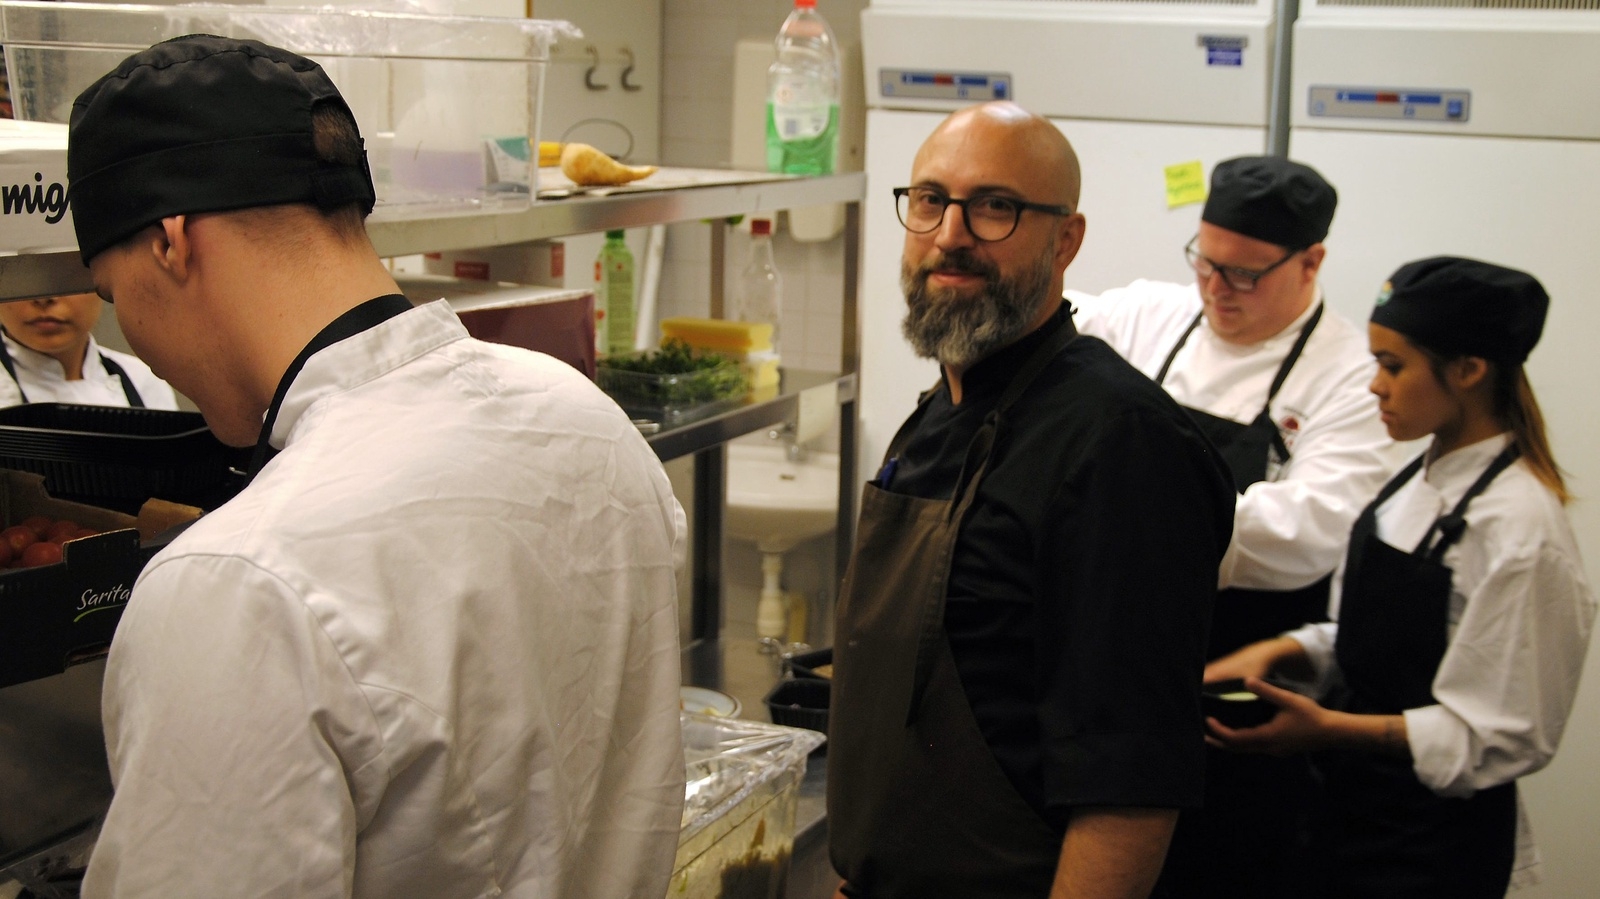 Ansvarig lärare Mikael Nertlinge tillsammans med treorna i köket. Foto: Lars-Åke Englund